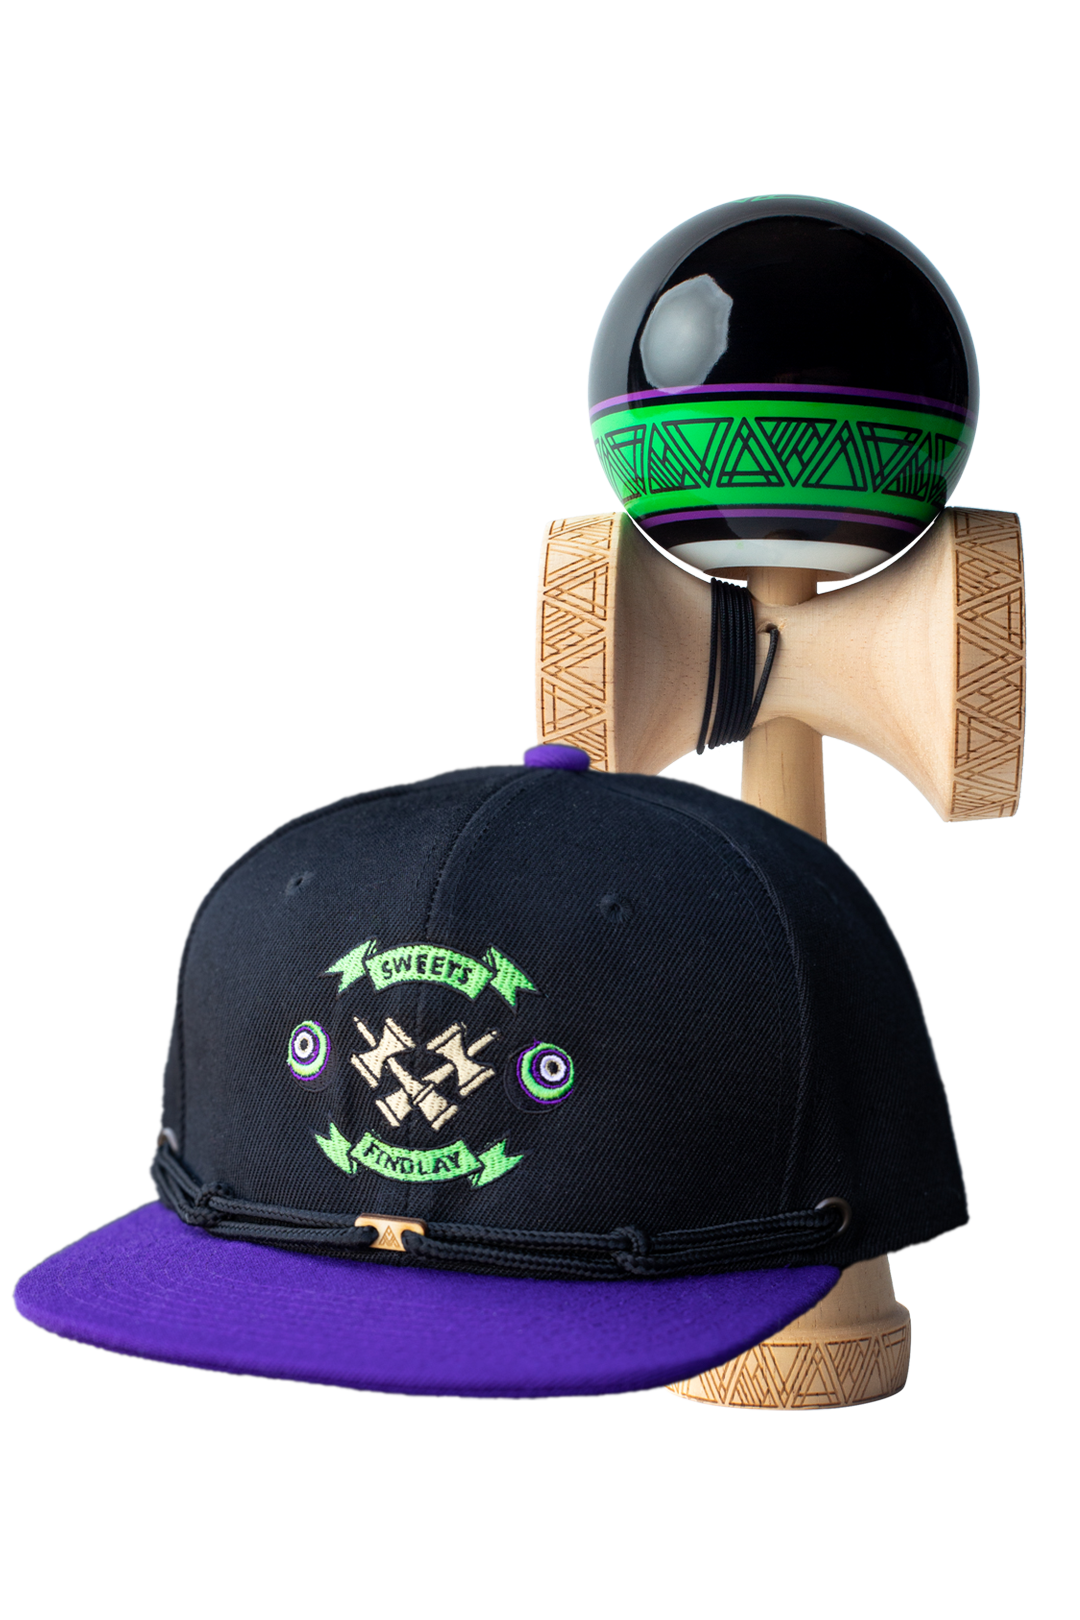 FINDLAY HATS x SWEETS - Kendama & Hat Bundle - Green